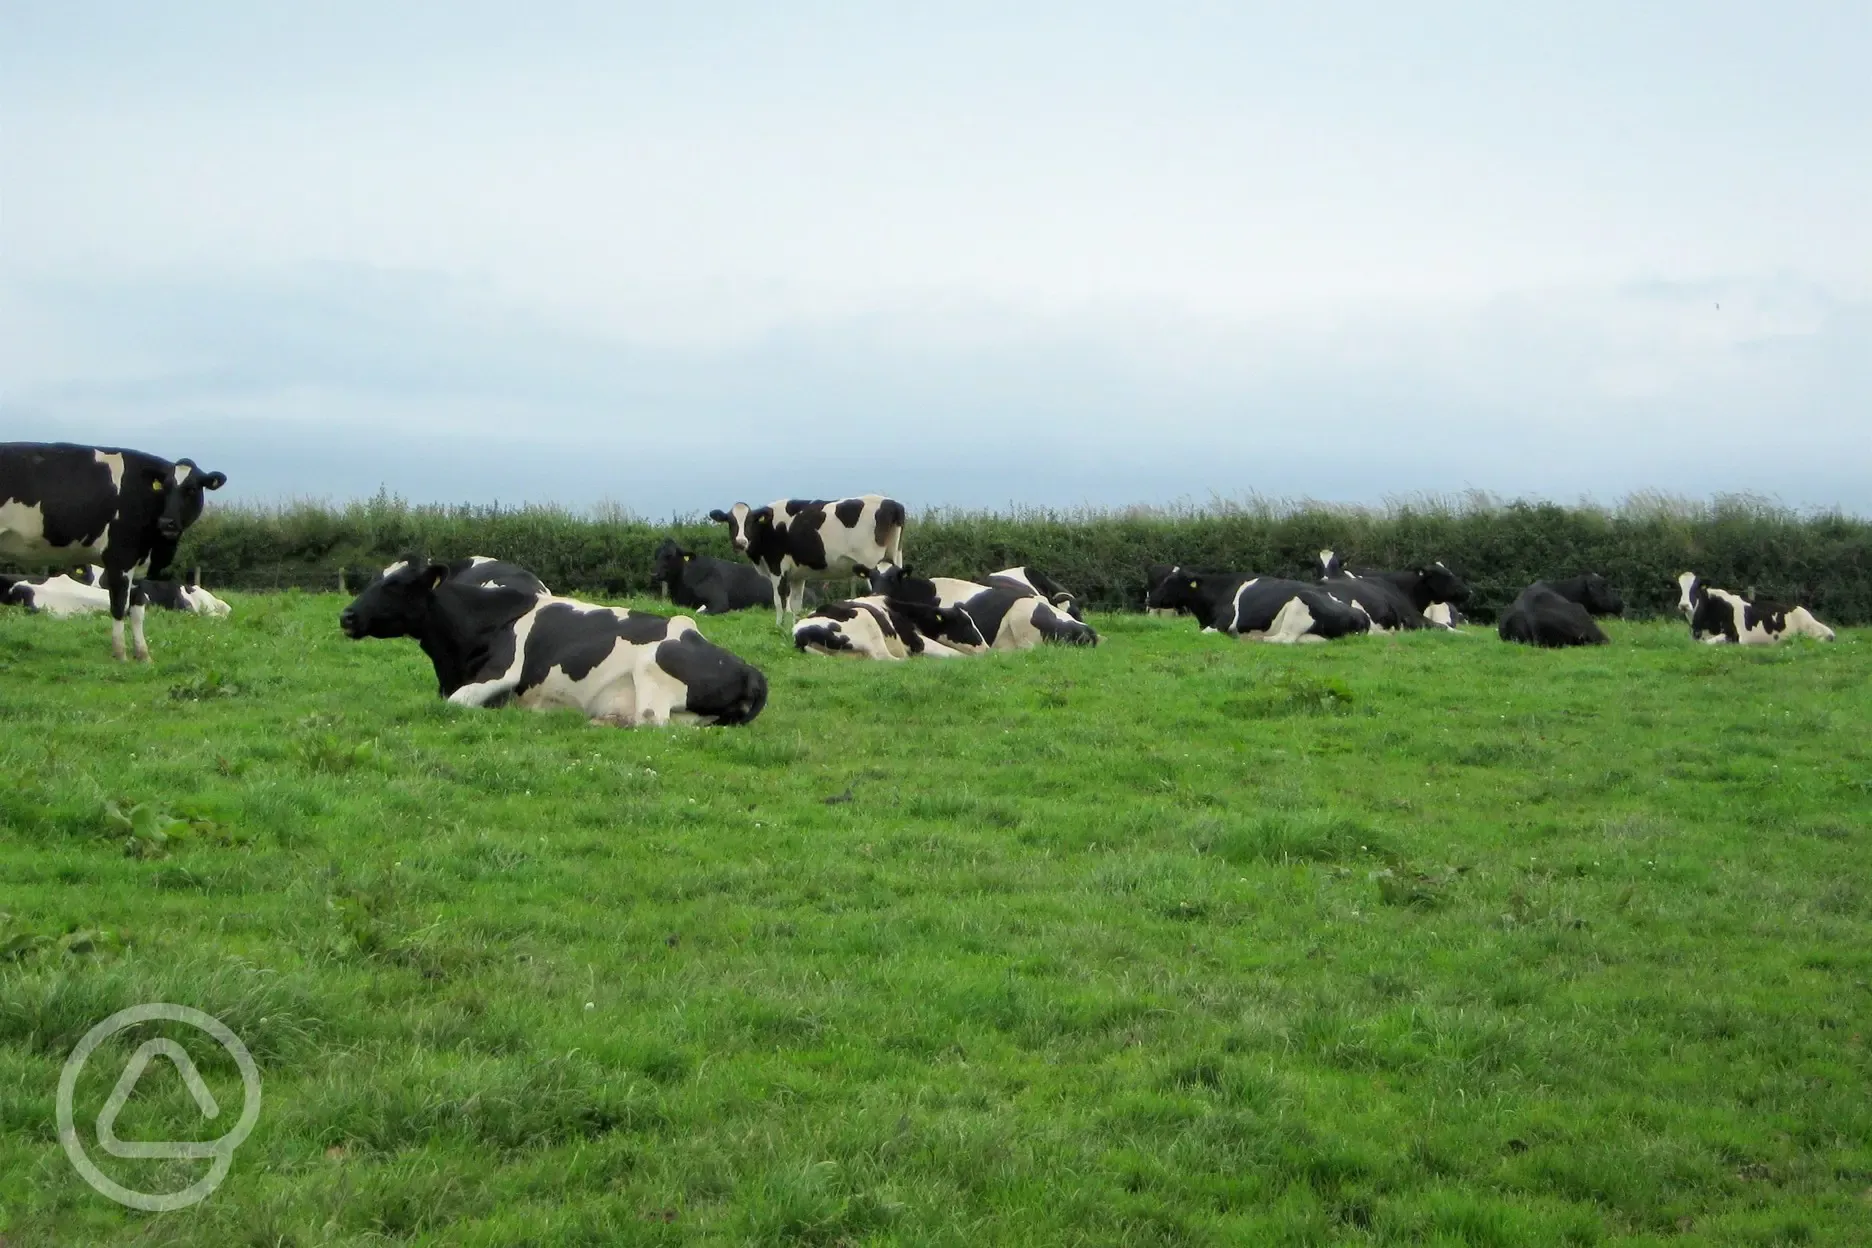 Take a stroll to meet the farm cows.